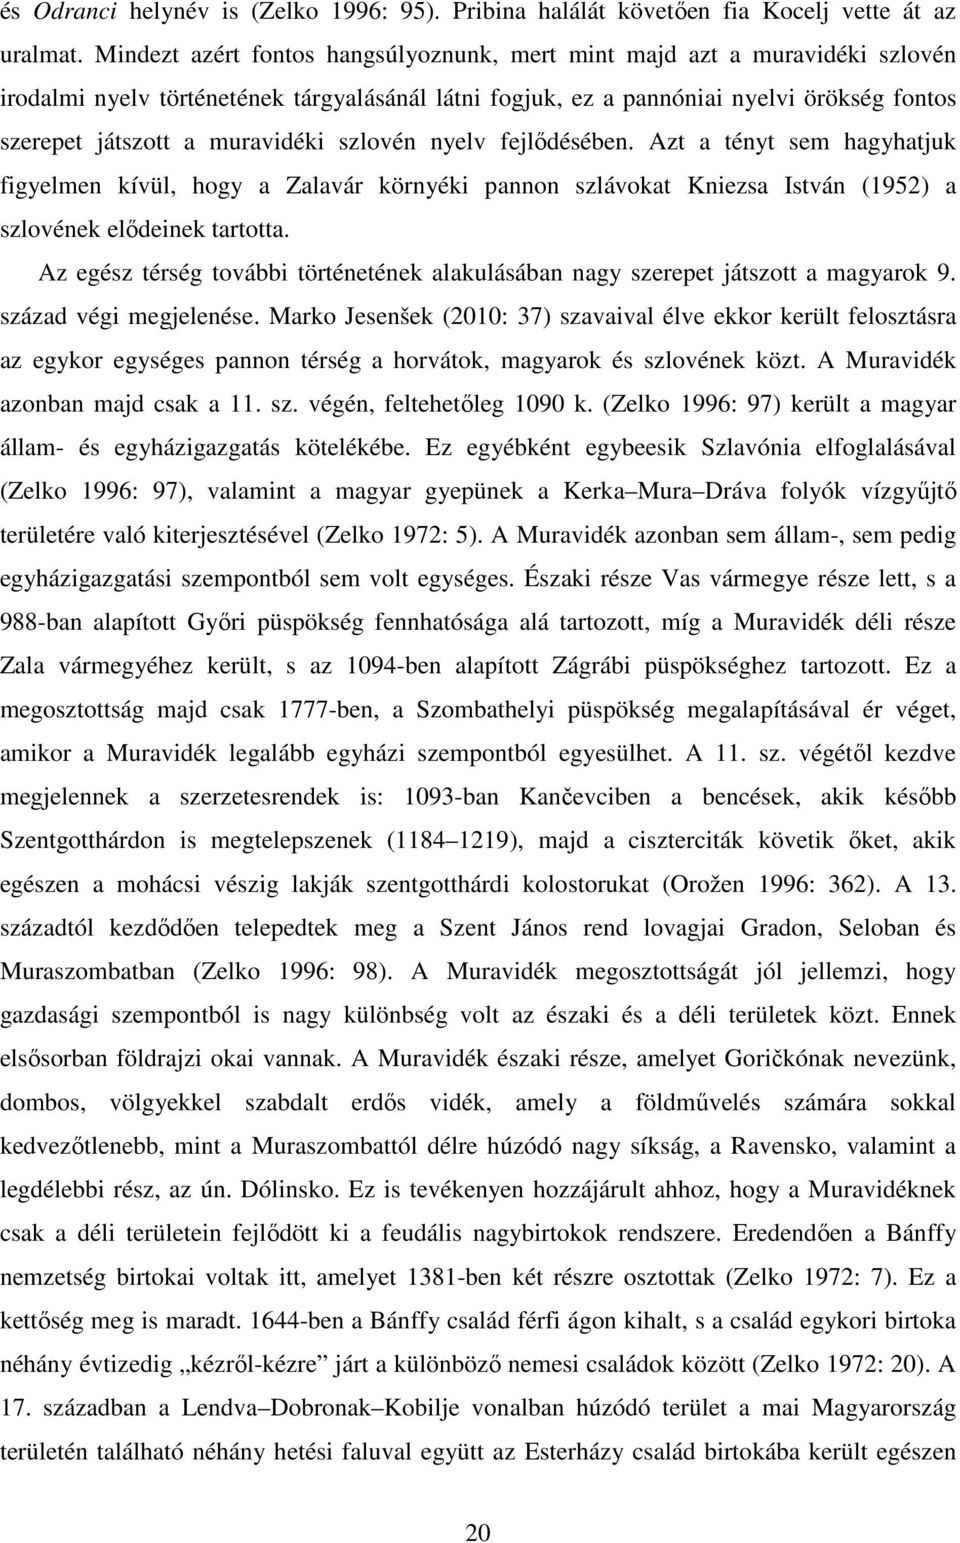 muravidéki szlovén nyelv fejlődésében. Azt a tényt sem hagyhatjuk figyelmen kívül, hogy a Zalavár környéki pannon szlávokat Kniezsa István (1952) a szlovének elődeinek tartotta.